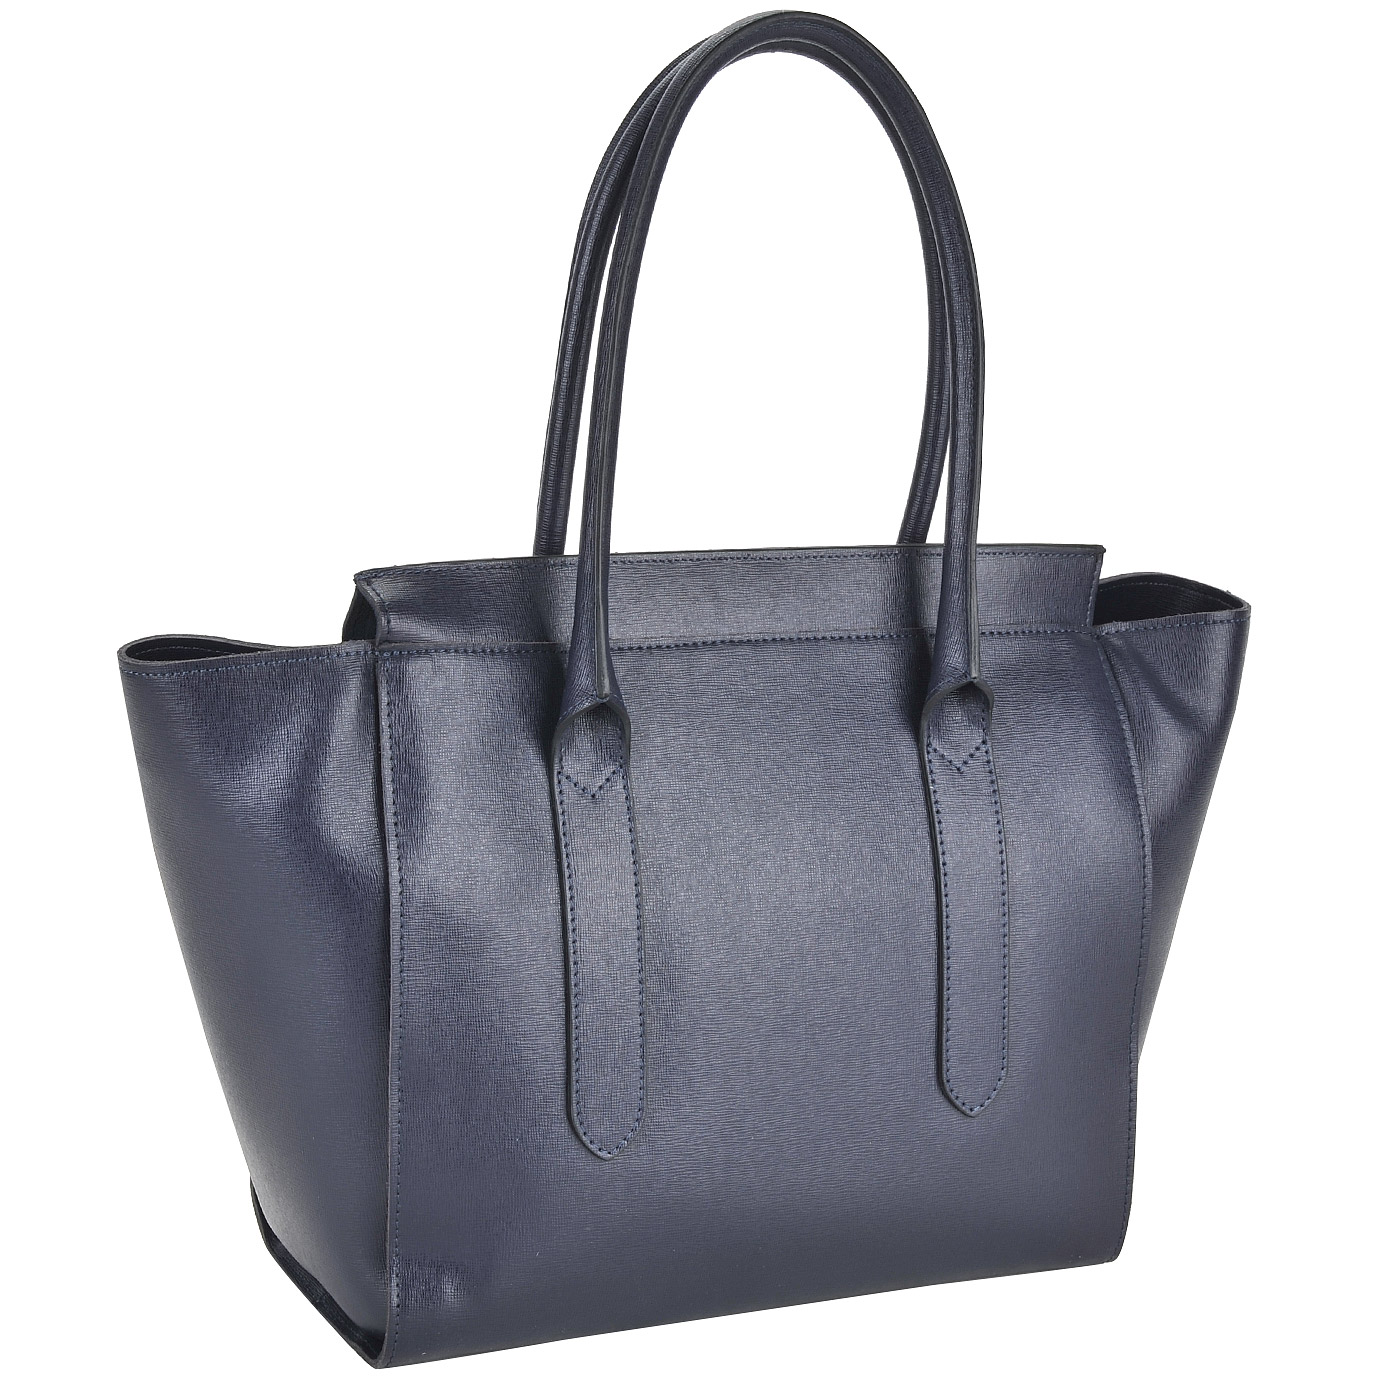 Вместительная женская сумка из синей сафьяновой кожи Ripani Cannella